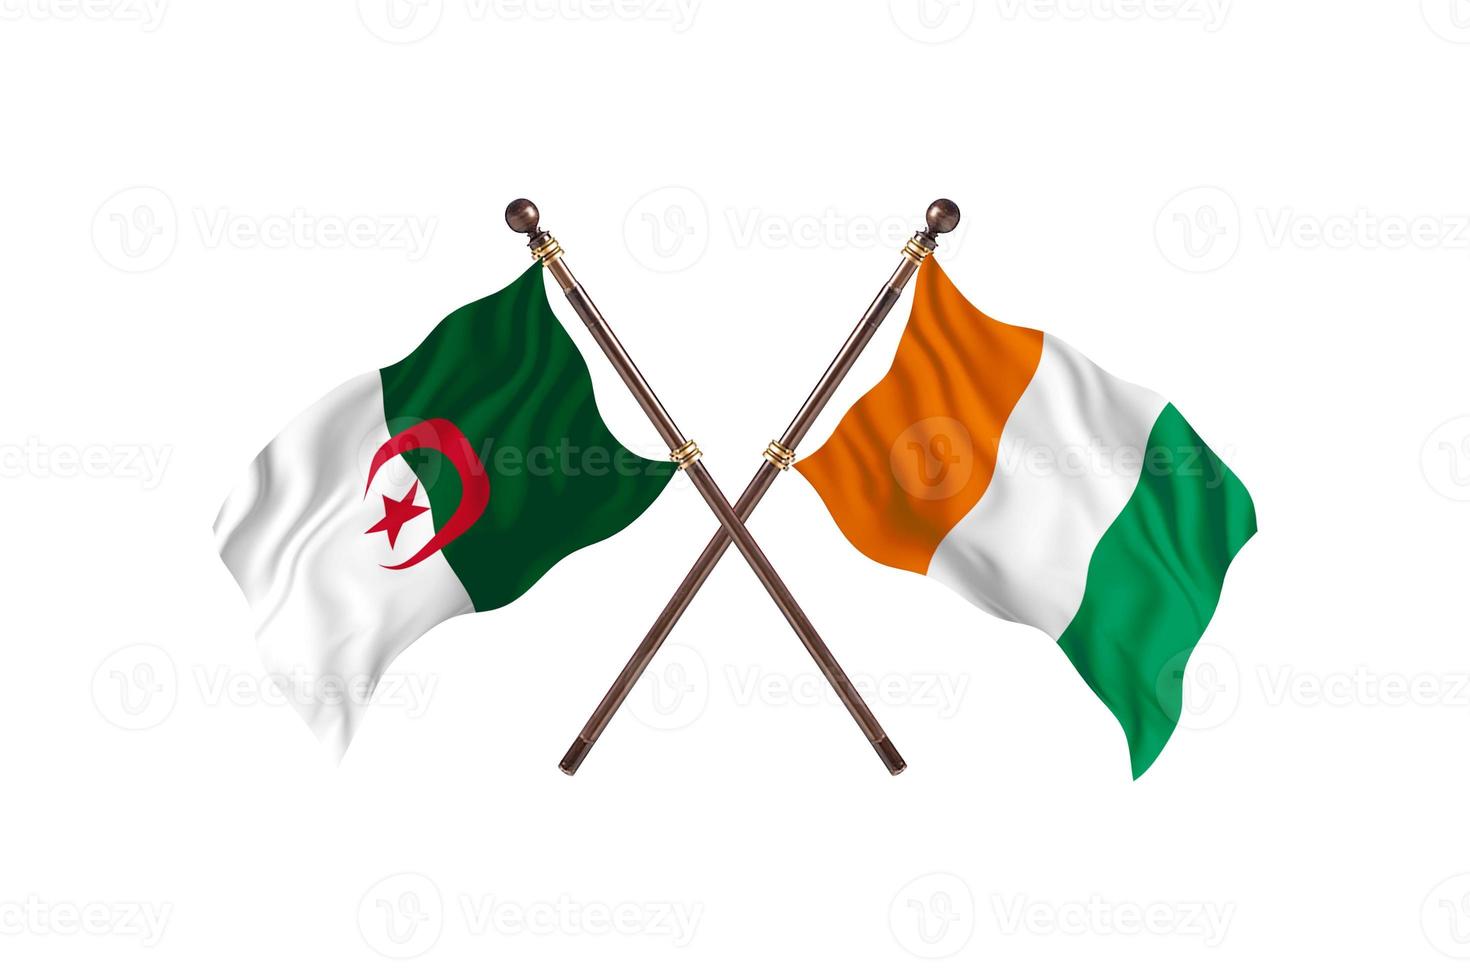 argelia contra costa de marfil dos banderas de países foto